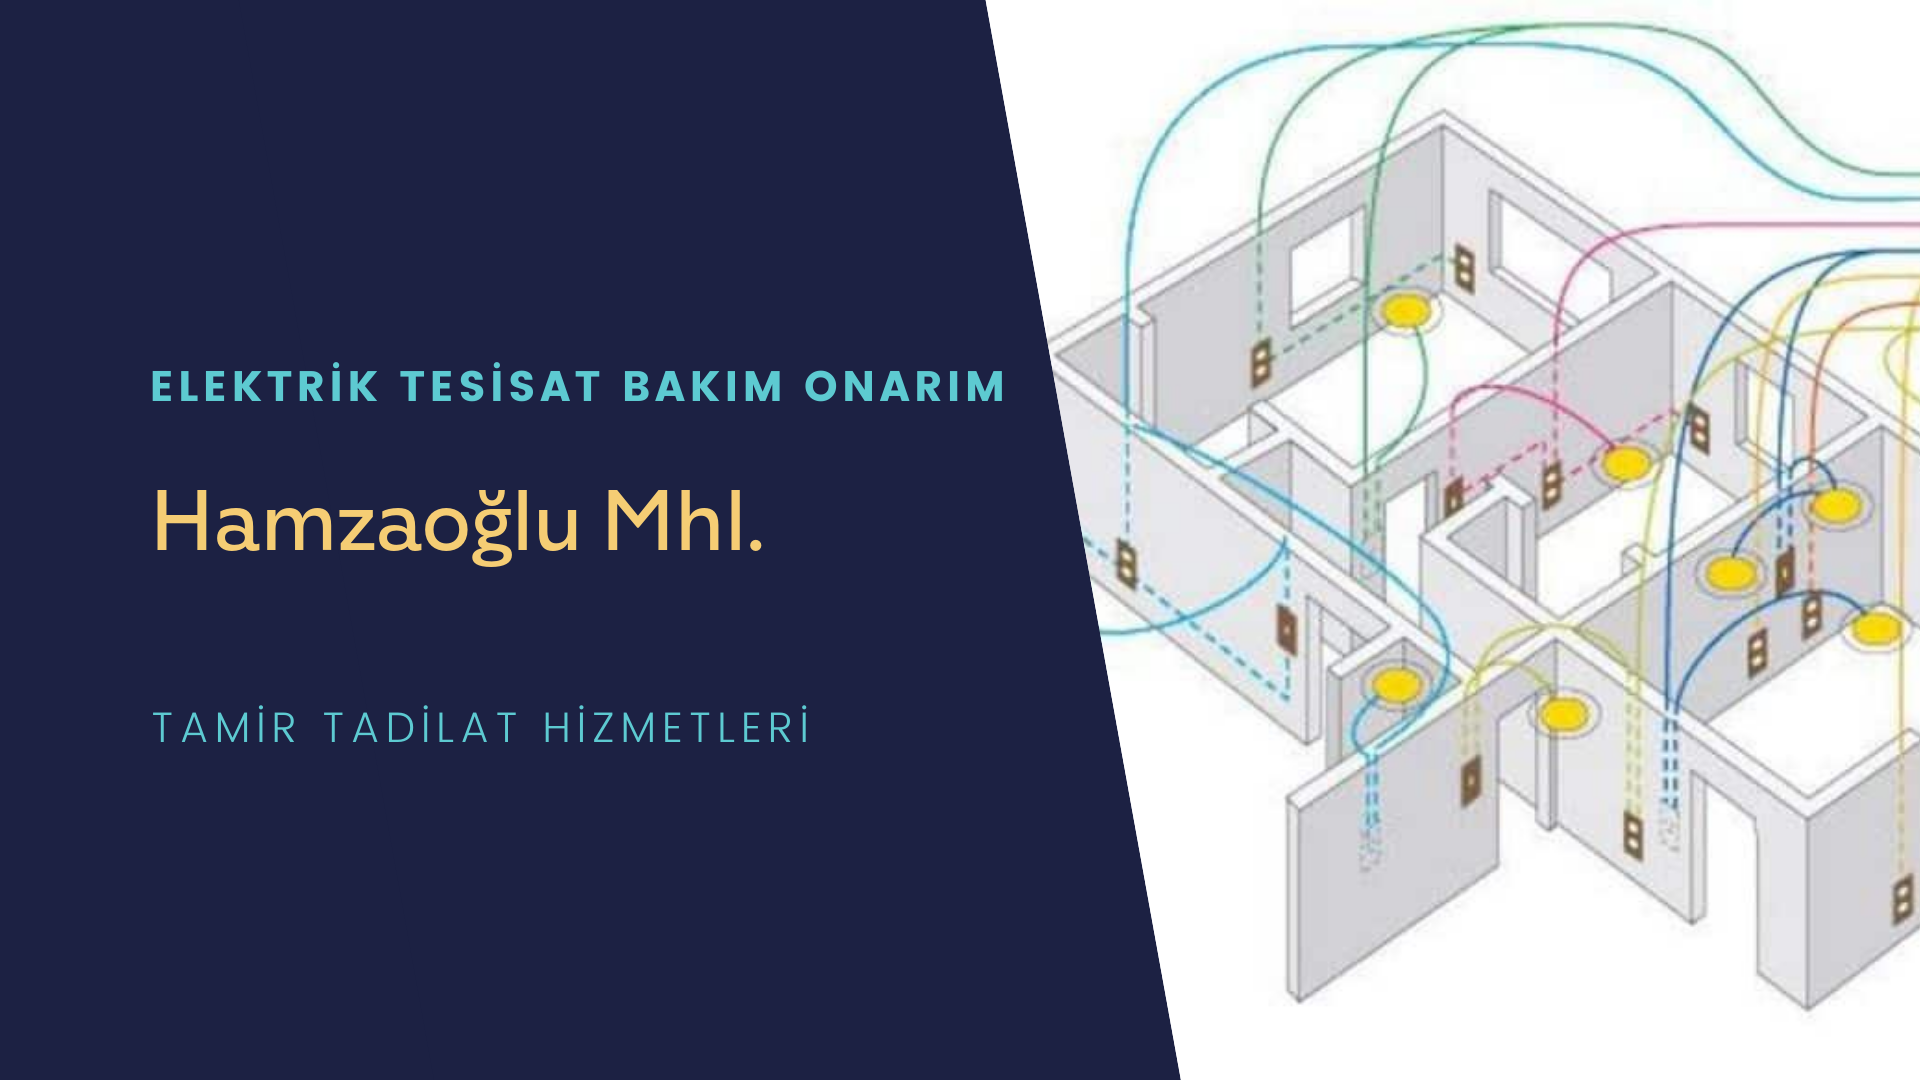 Hamzaoğlu Mhl.  elektrik tesisatı ustalarımı arıyorsunuz doğru adrestenizi Hamzaoğlu Mhl. elektrik tesisatı ustalarımız 7/24 sizlere hizmet vermekten mutluluk duyar.